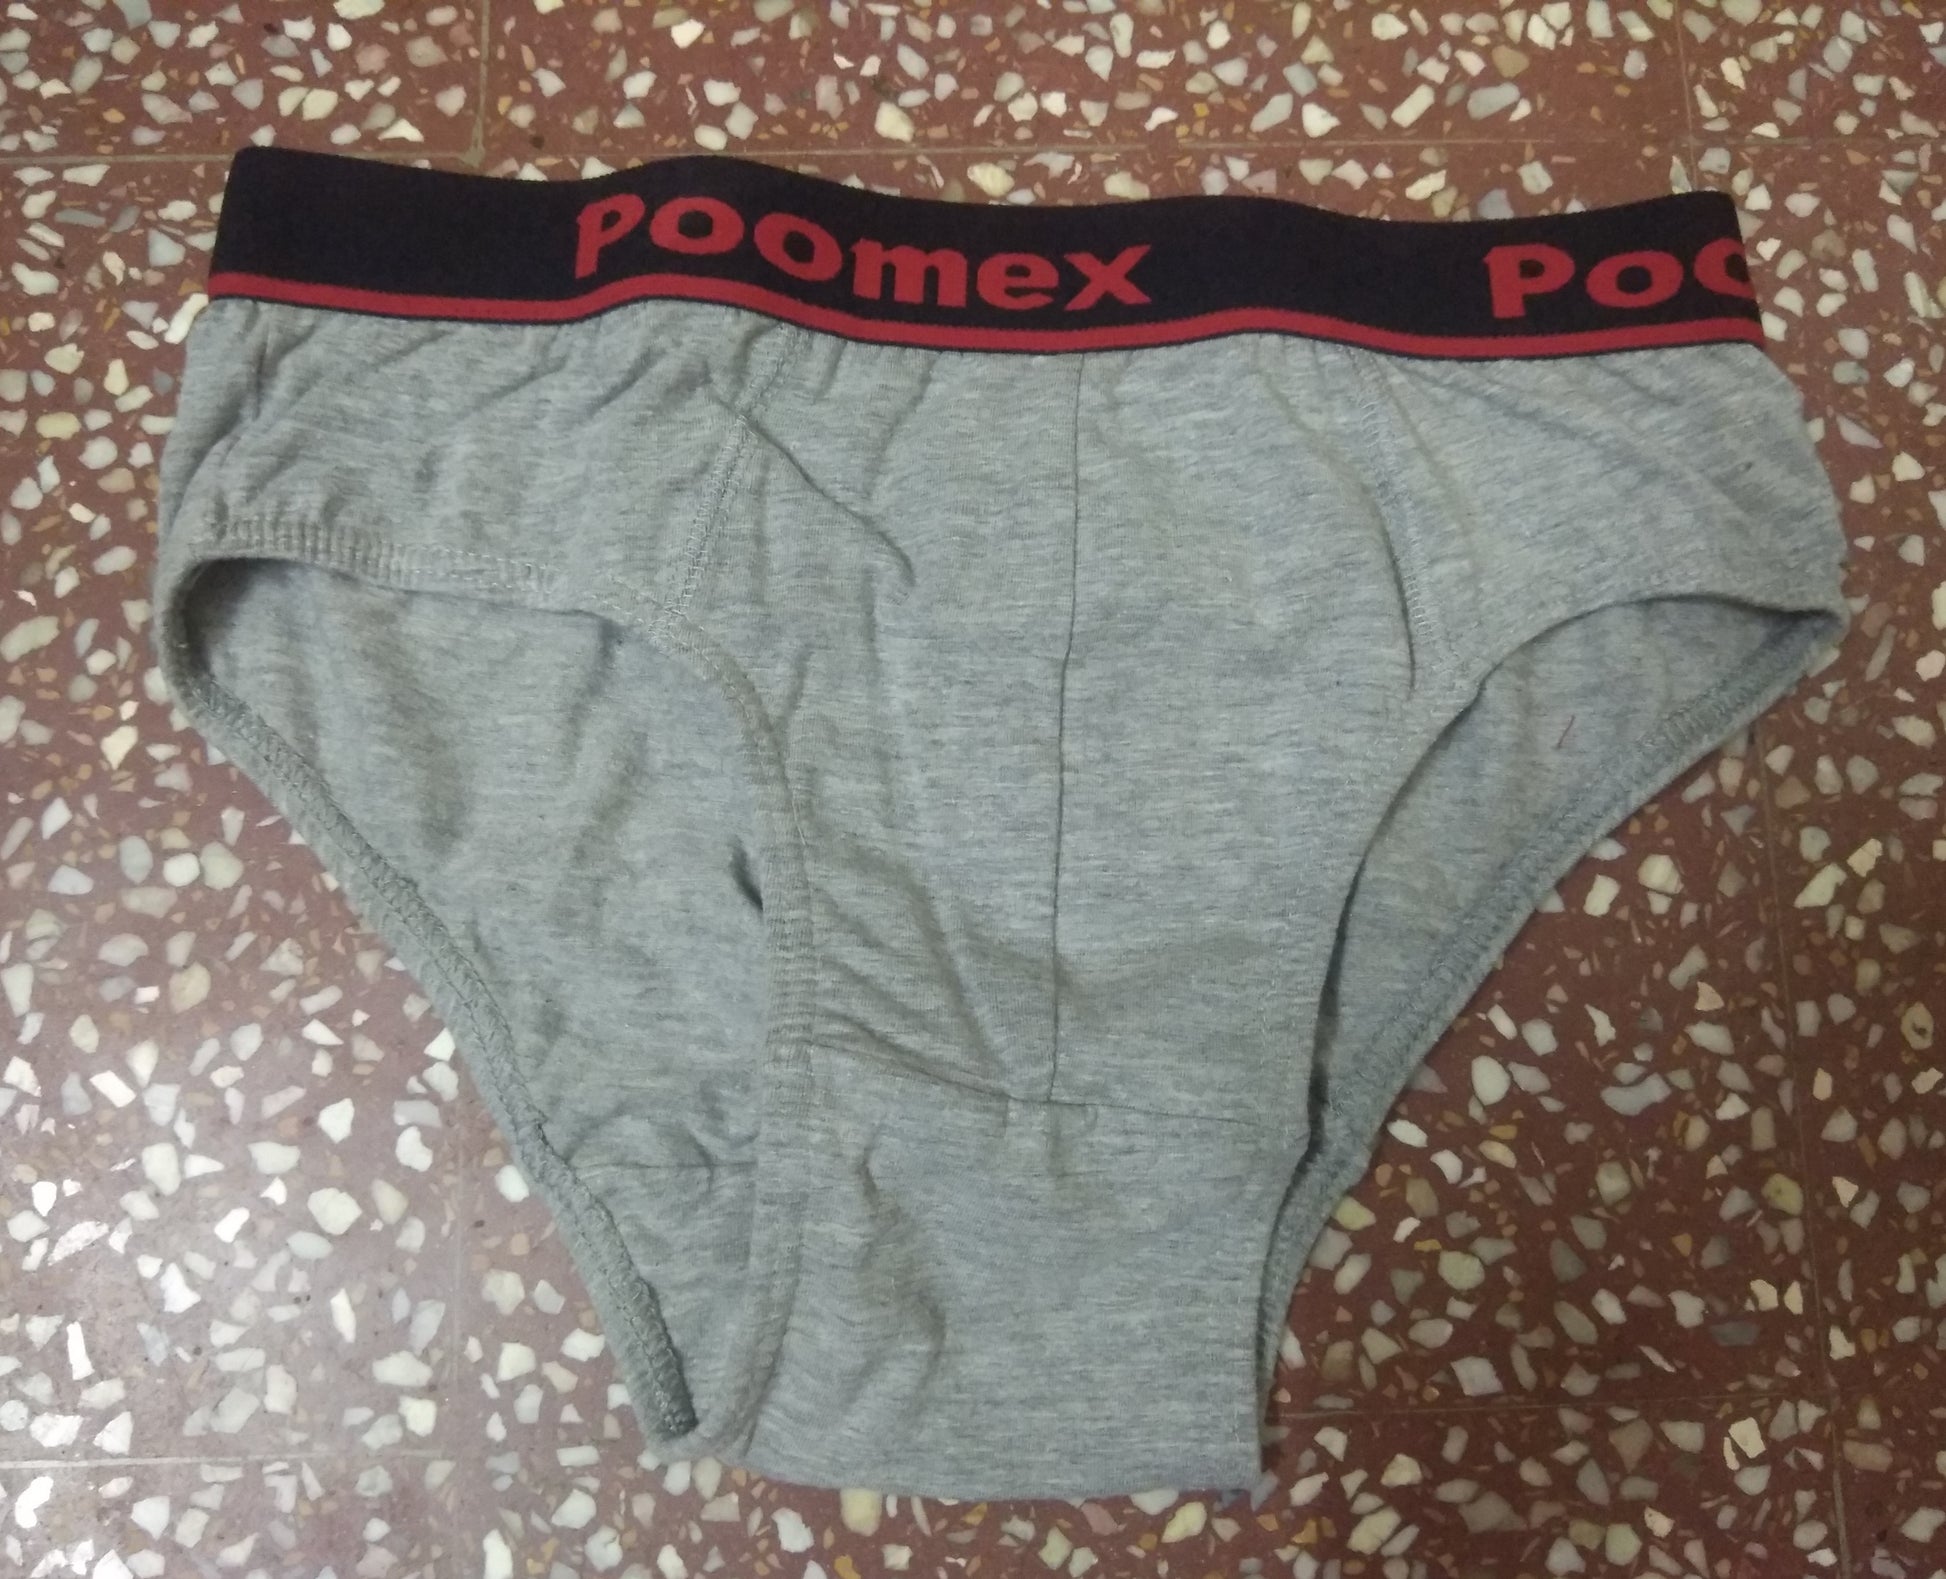 Poomex Track Pants